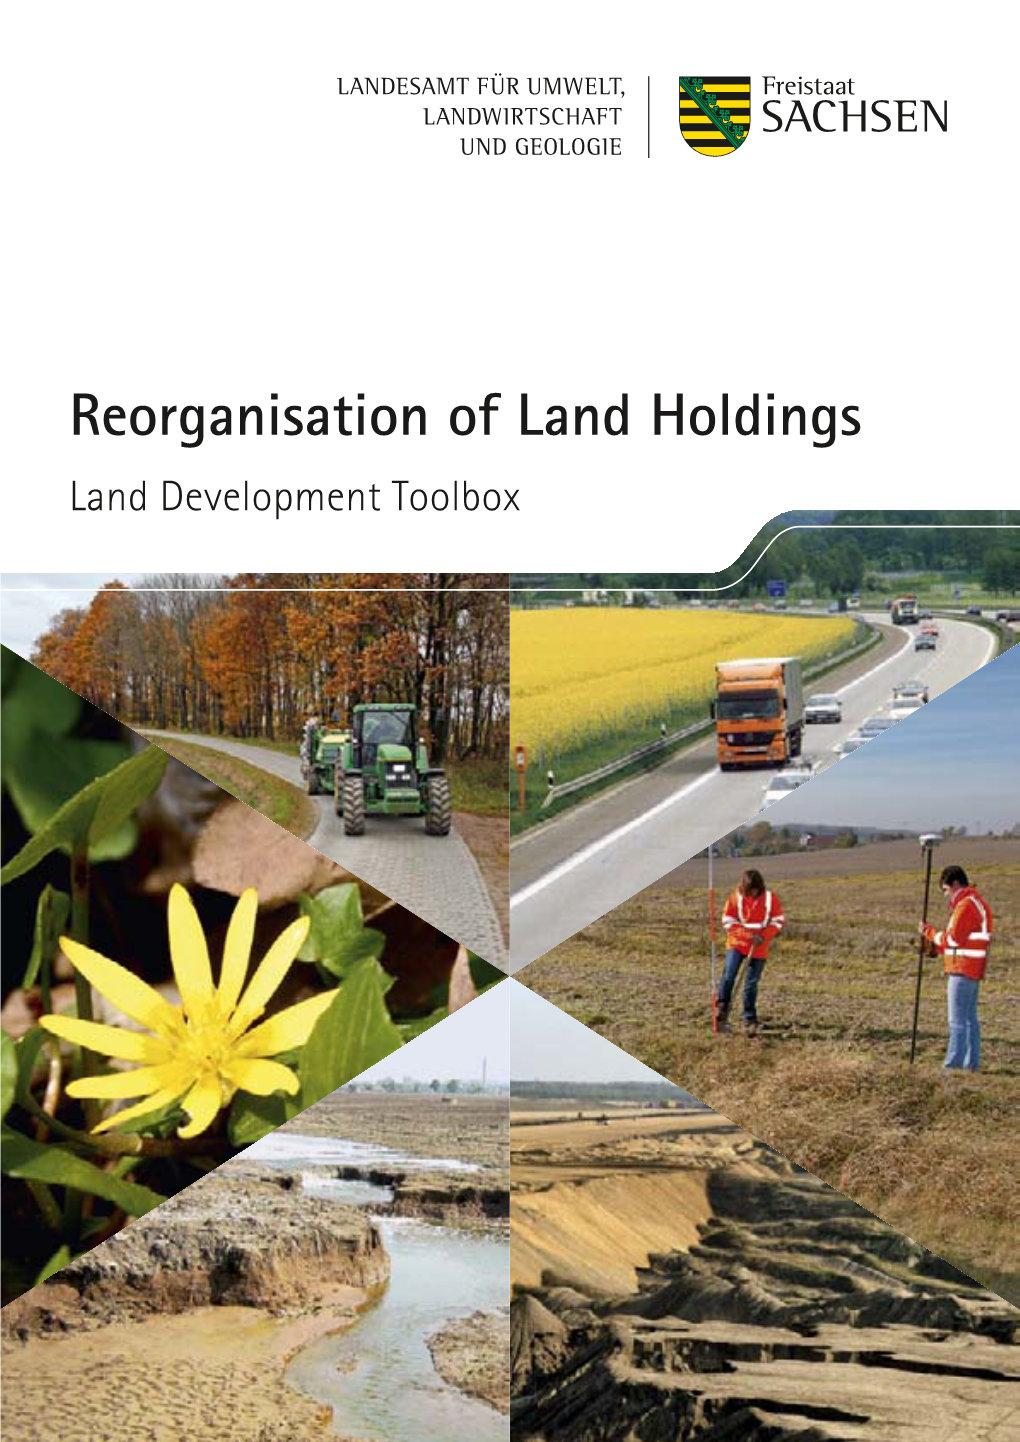 Reorganisation of Land Holdings (Ländliche Neuordnung)